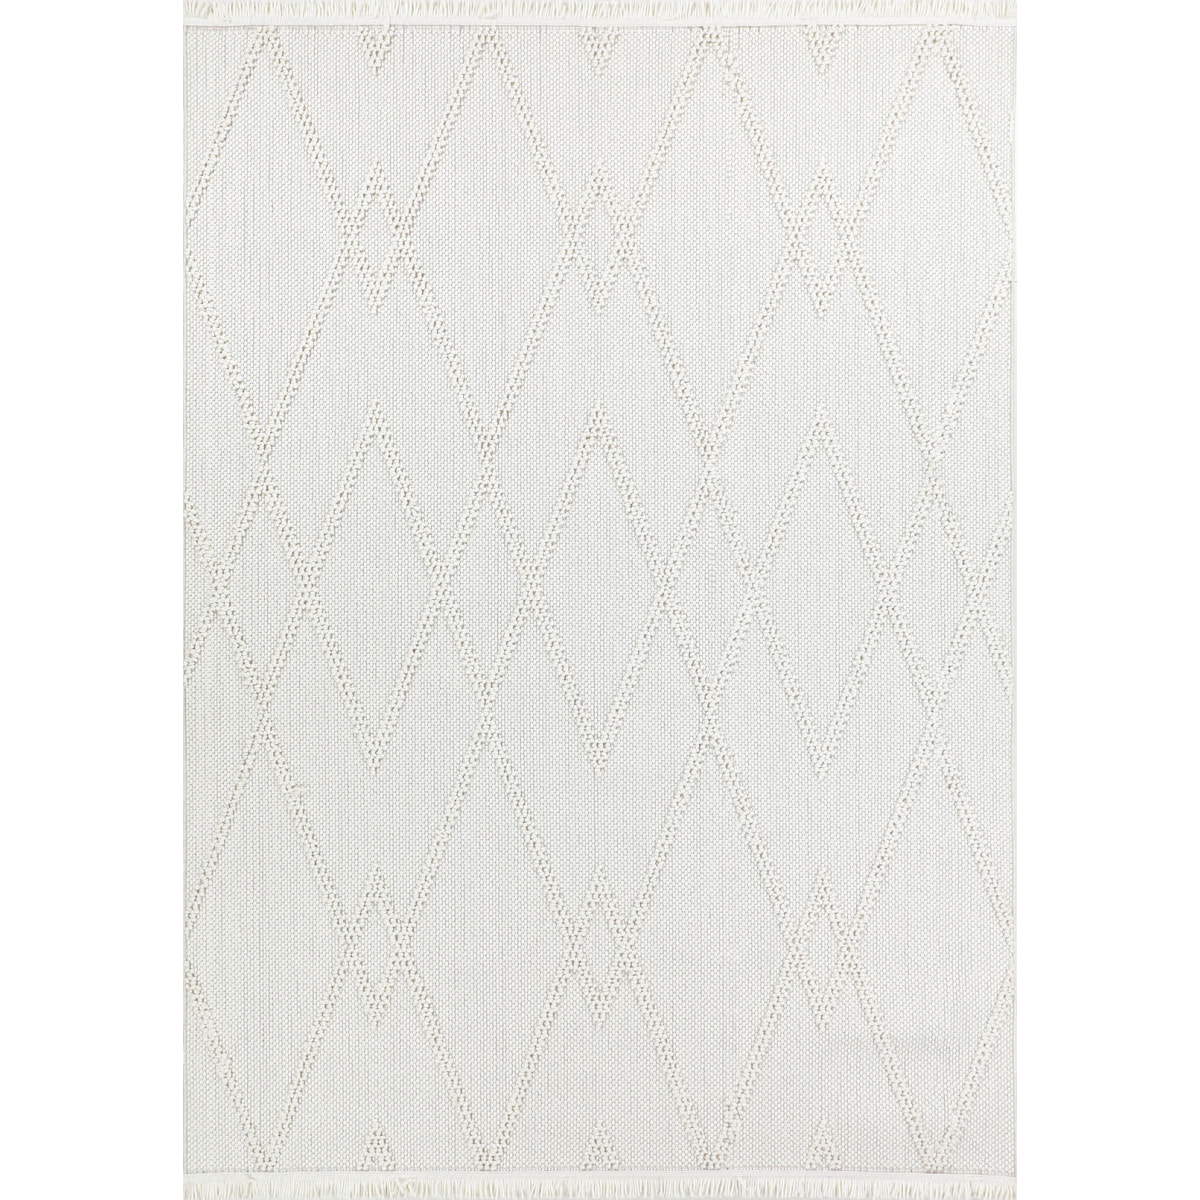 Bali - tapis moderne motif géoémétrique, crème